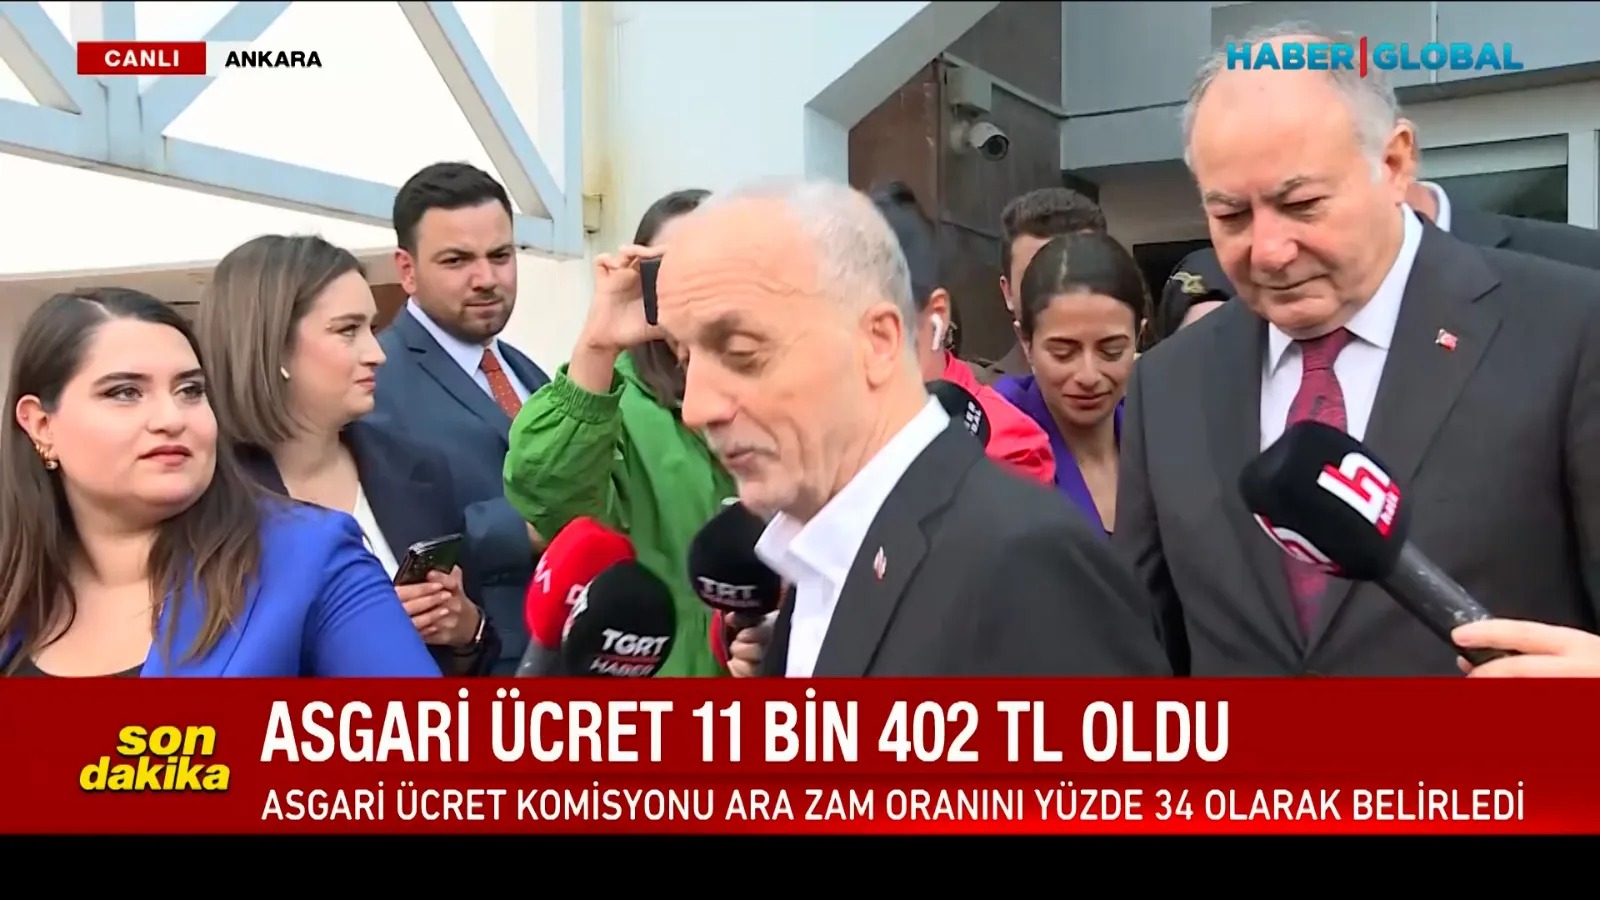 Türk İş Başkanı Atalay'dan 'Asgari ücret 500 dolar altında kaldı' diyen muhabire: Kızım Allah yardımcın olsun